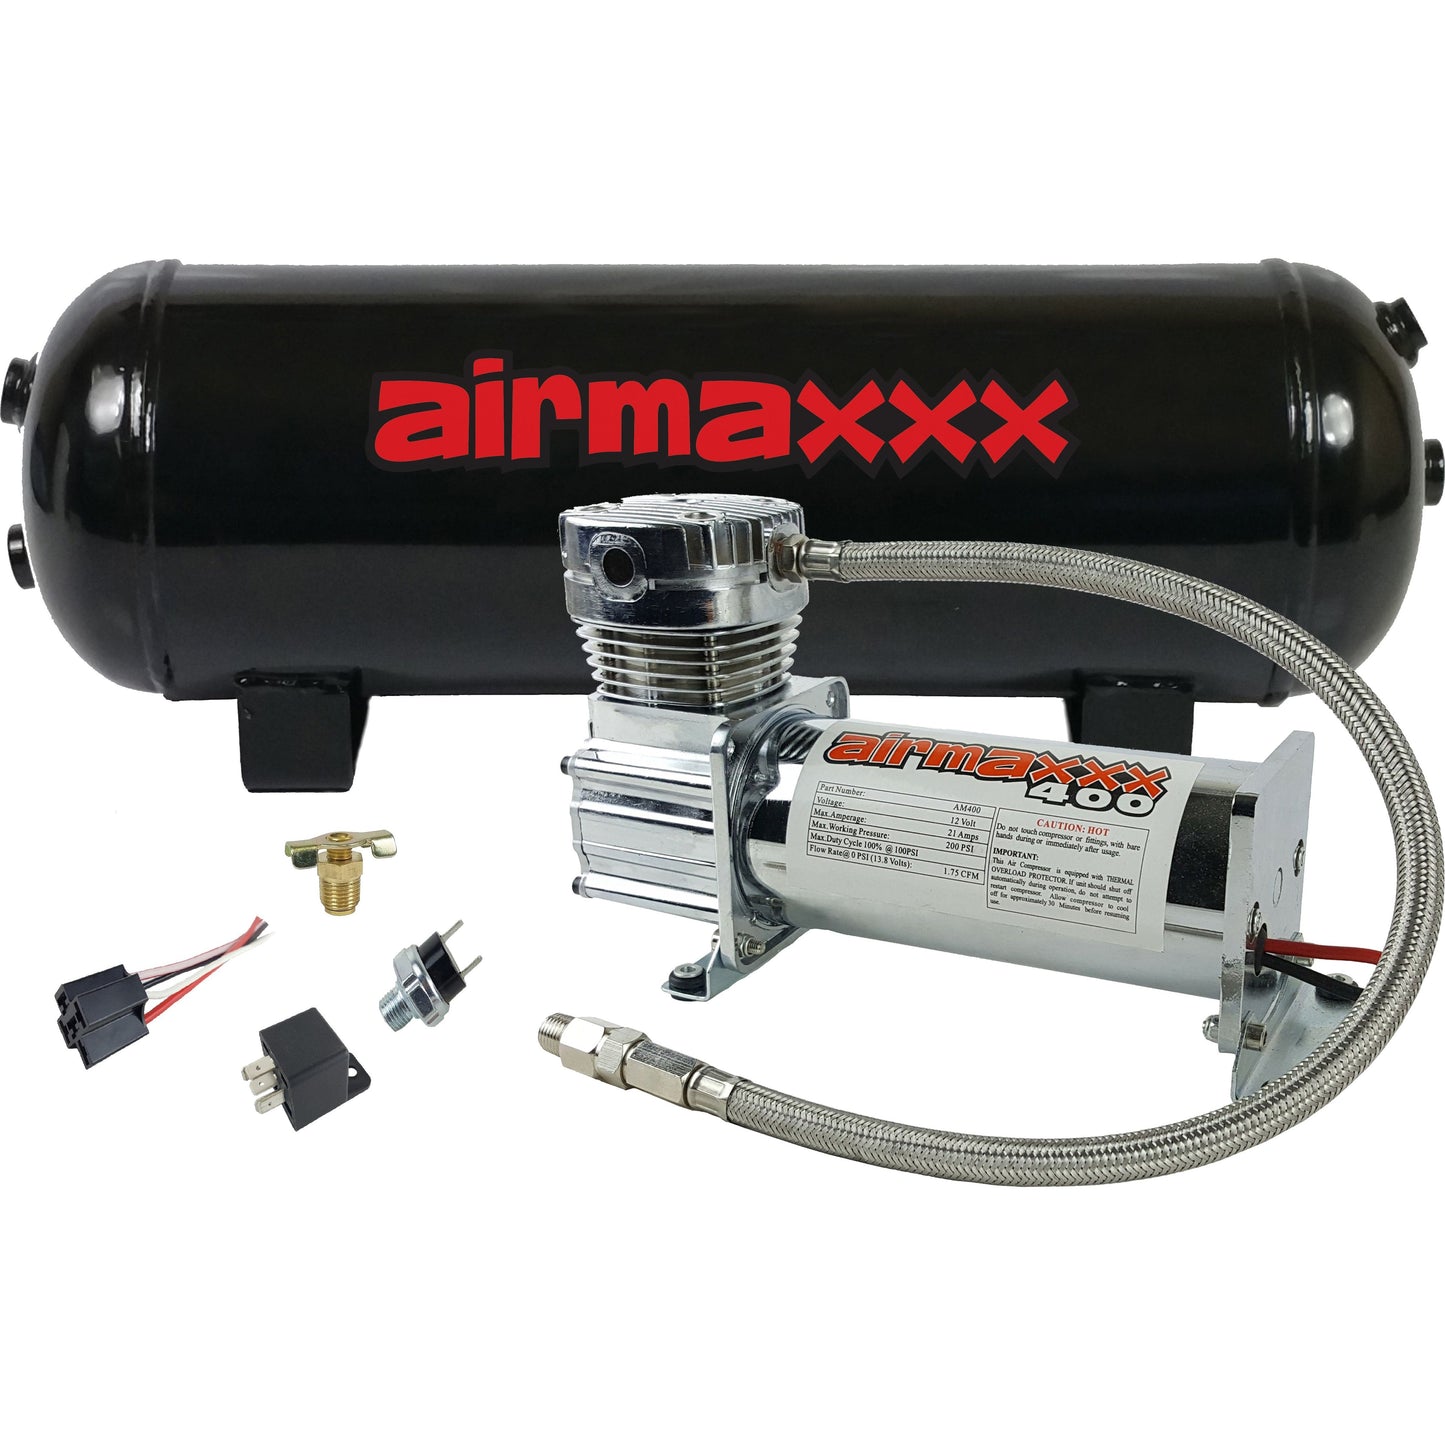 Air Compressor Chrome 400 airmaxxx & 3 Gallon Steel Air Tank